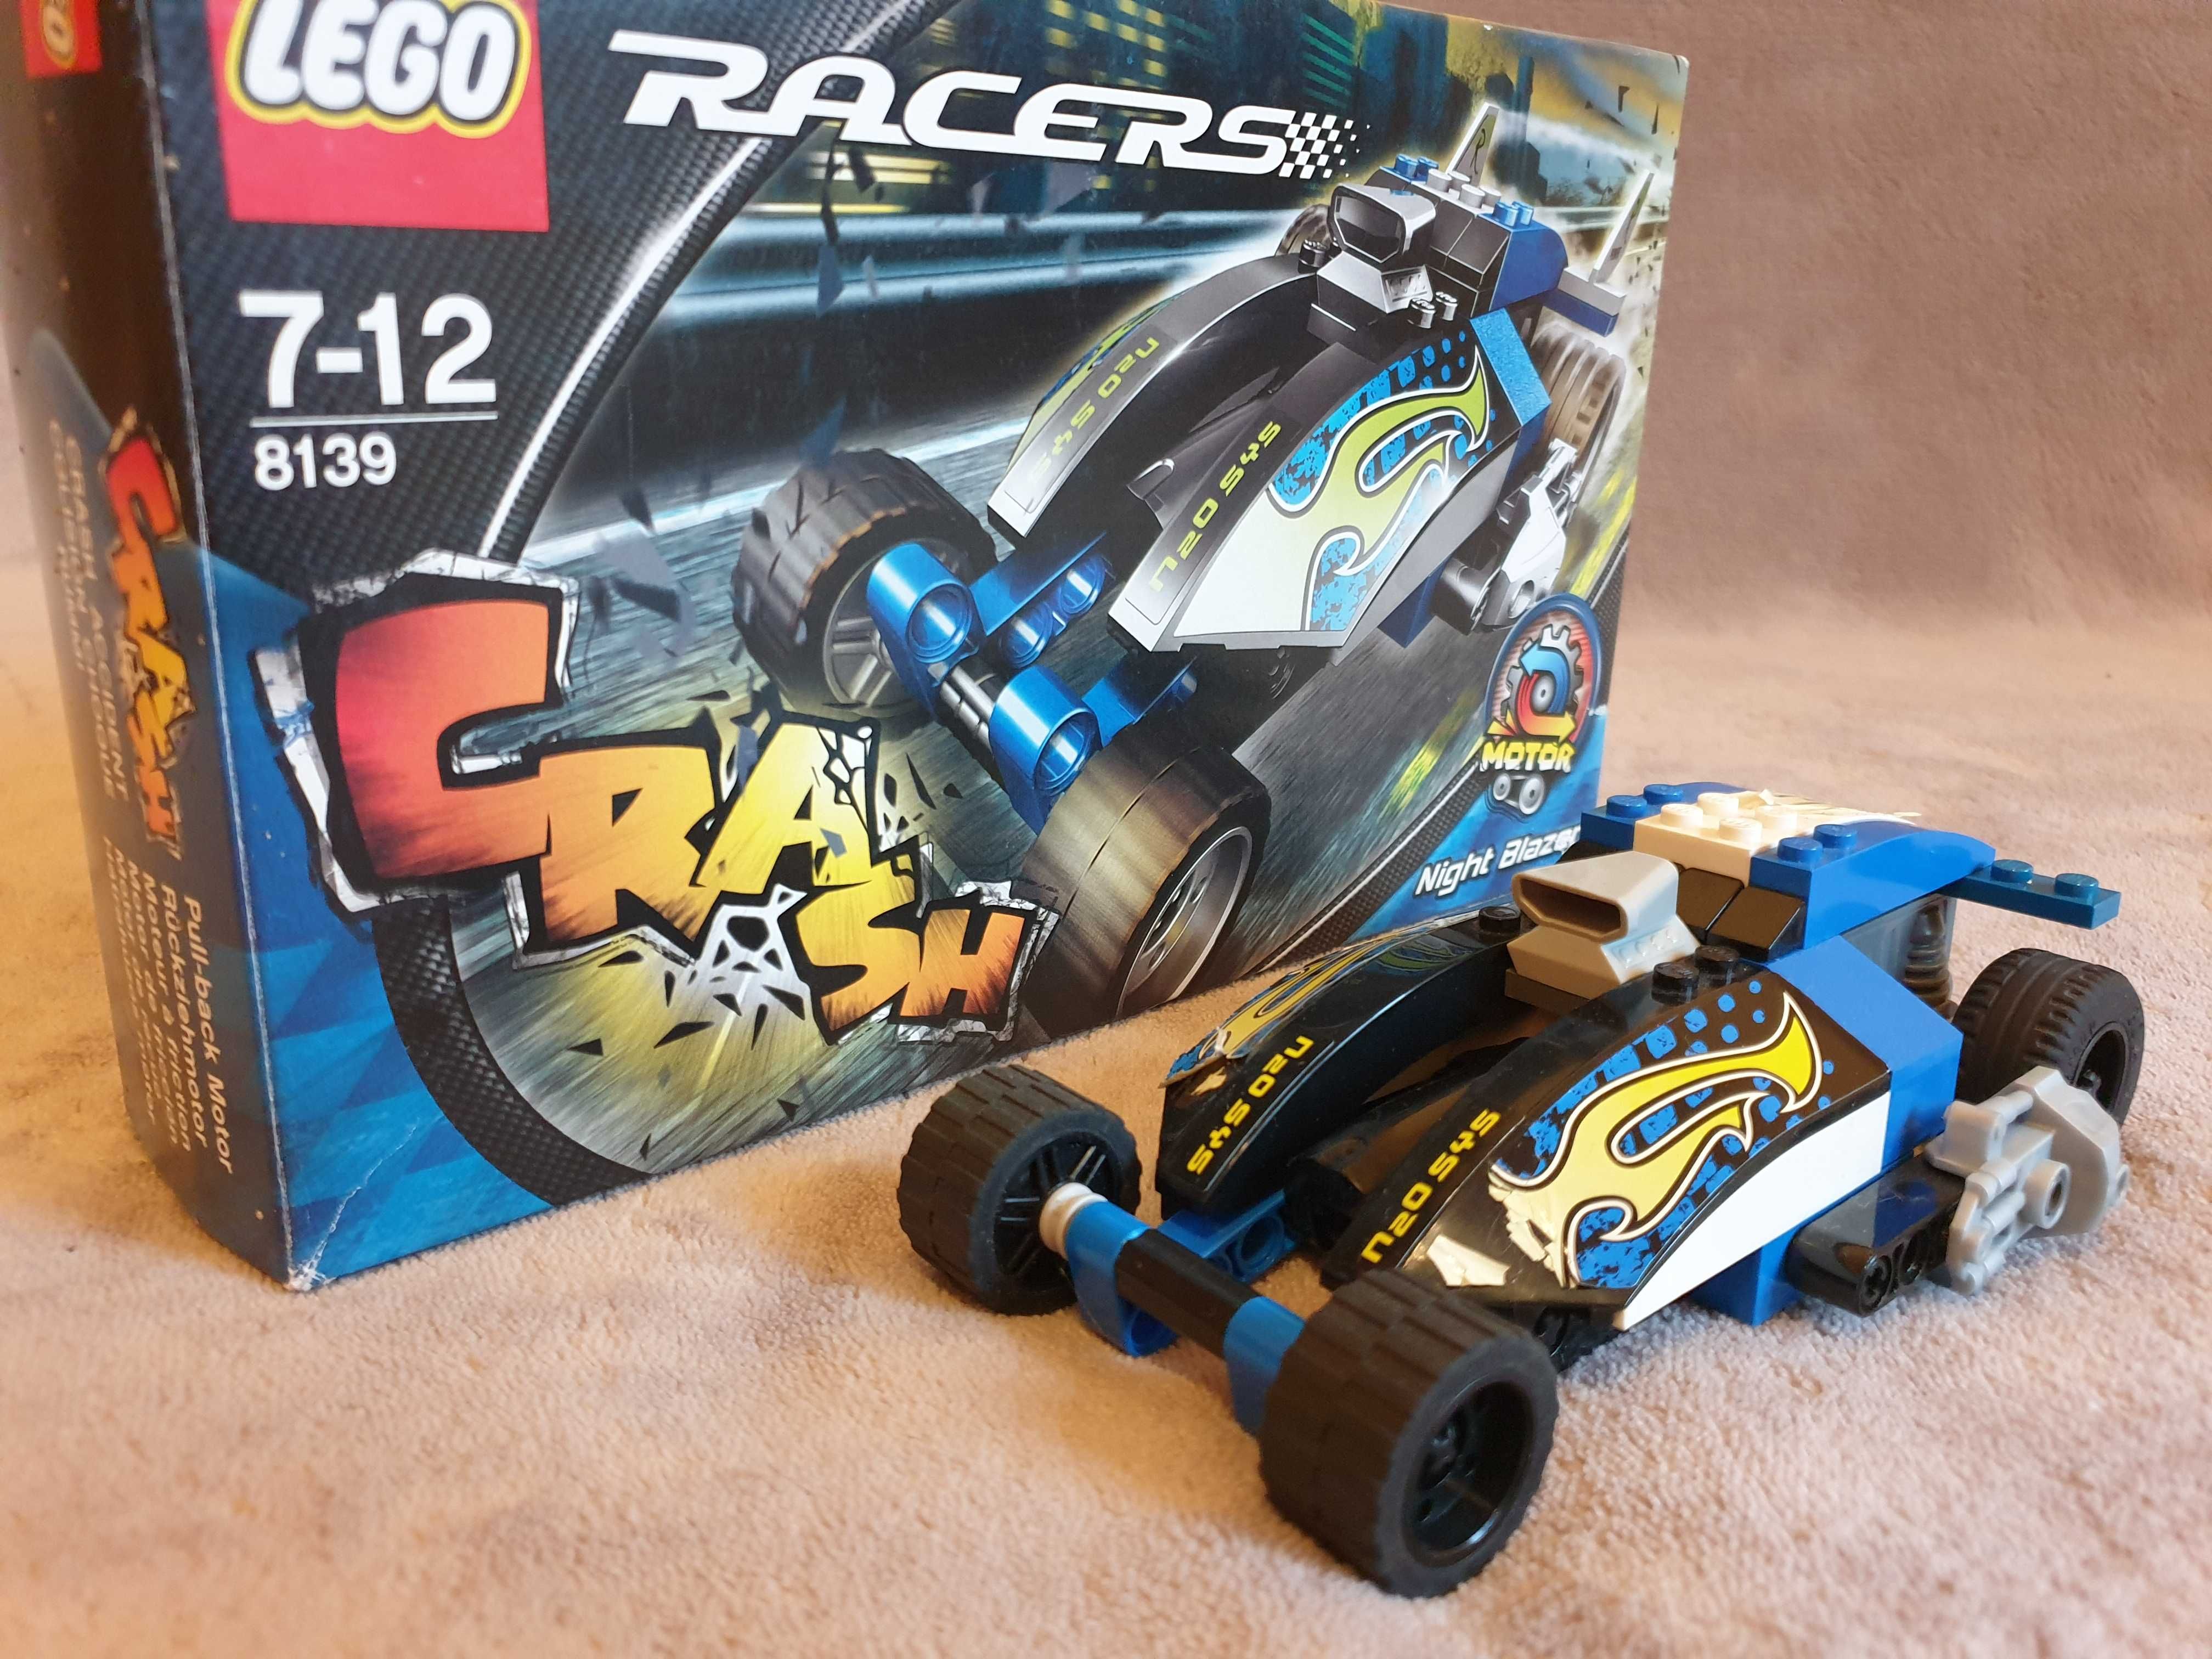 Lego Racers 8139, 7-12 ani